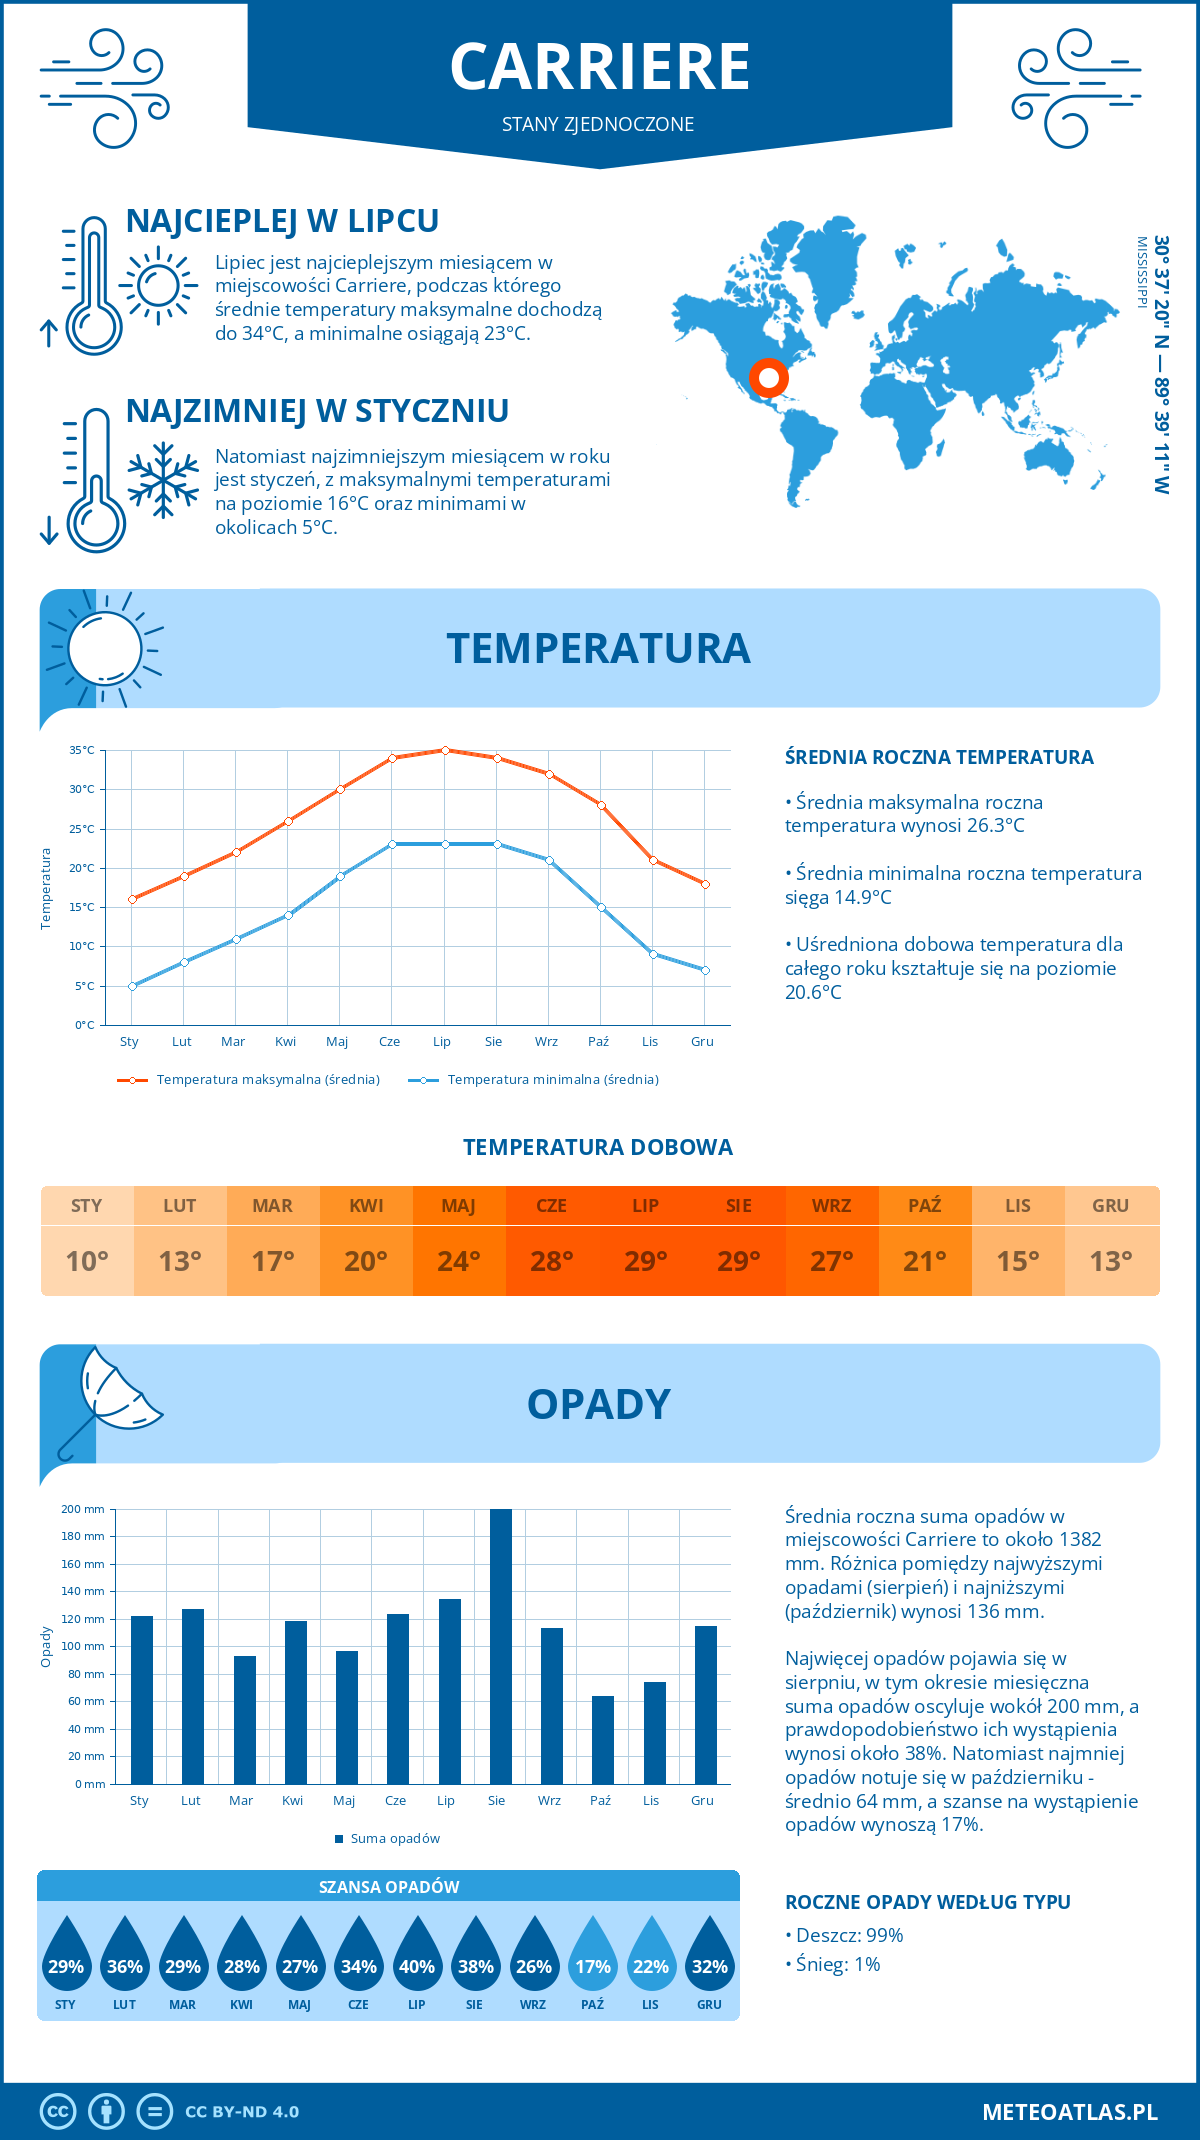 Pogoda Carriere (Stany Zjednoczone). Temperatura oraz opady.